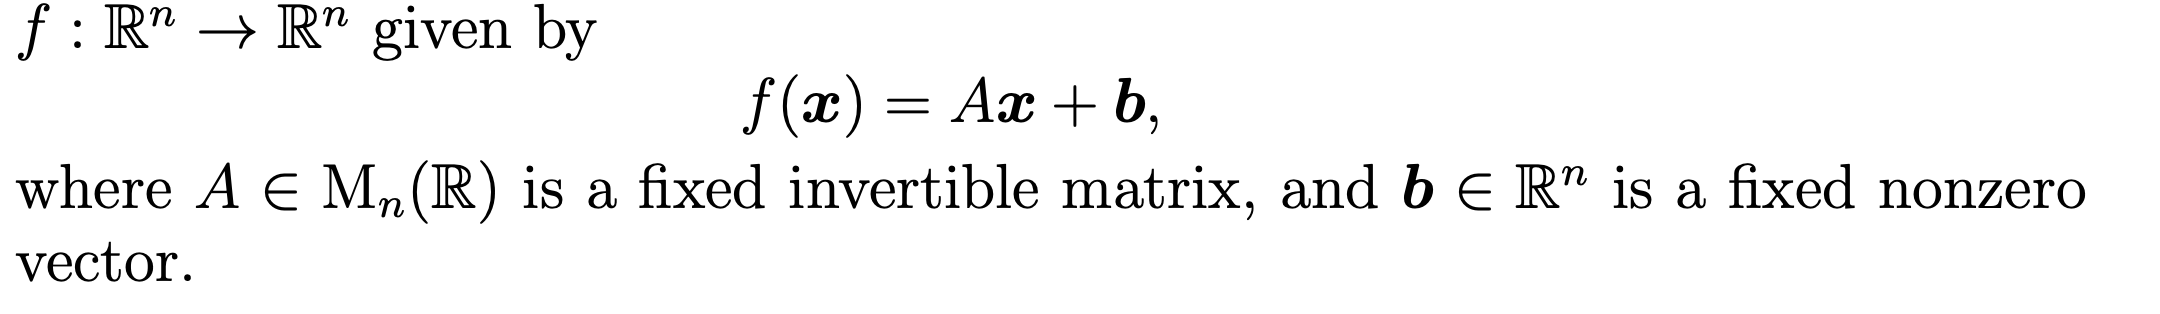 f: R" → R" given by
f (x) = Ax + b,
where A E Mn(R) is a fixed invertible matrix, and b E R" is a fixed nonzero
vector.
